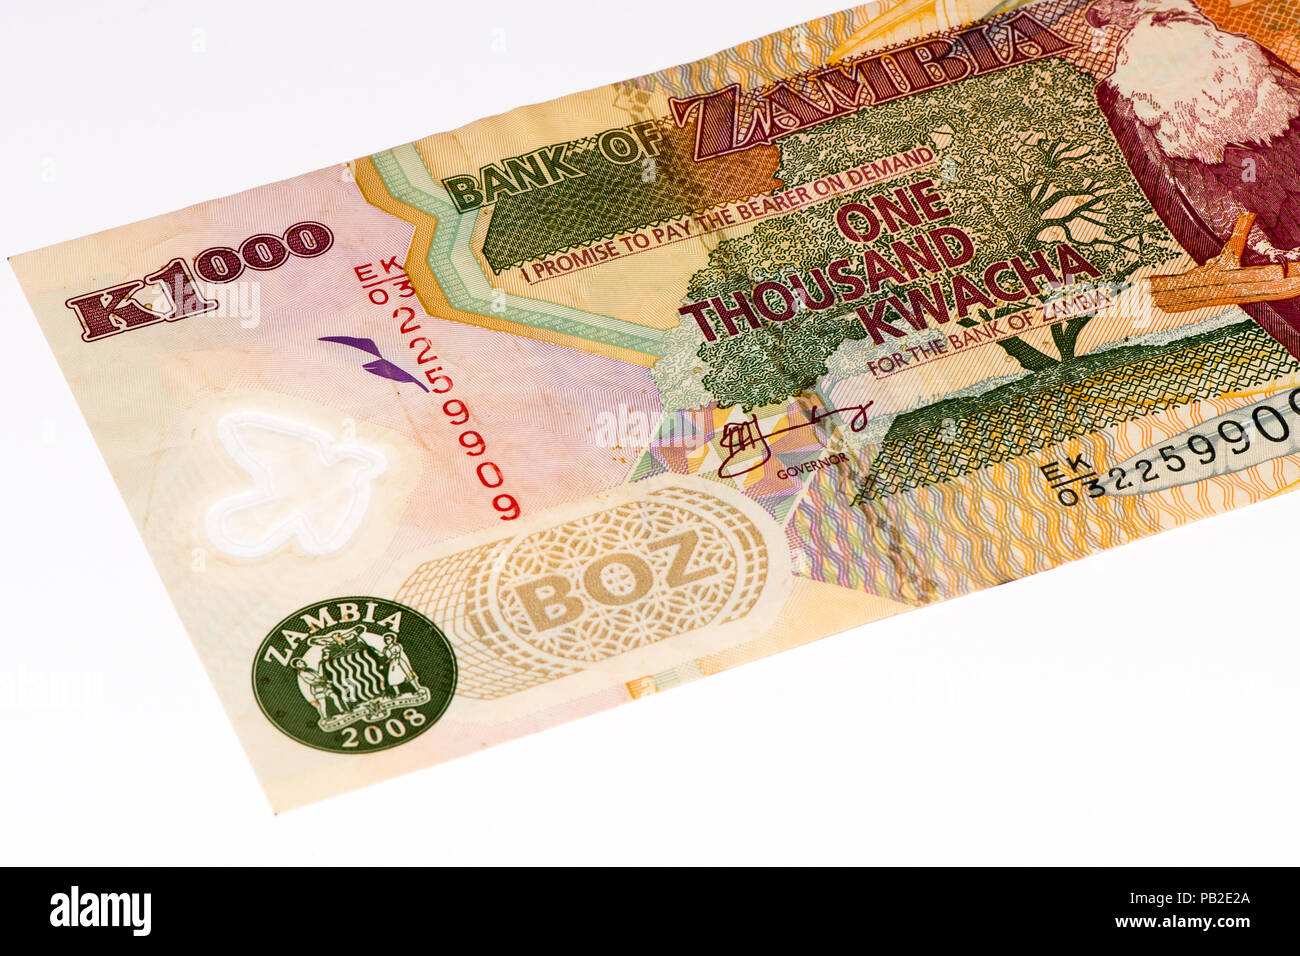 1000 Zambian kwach bank note. Zambian kwacha is the national currency of Zambia Stock Photo